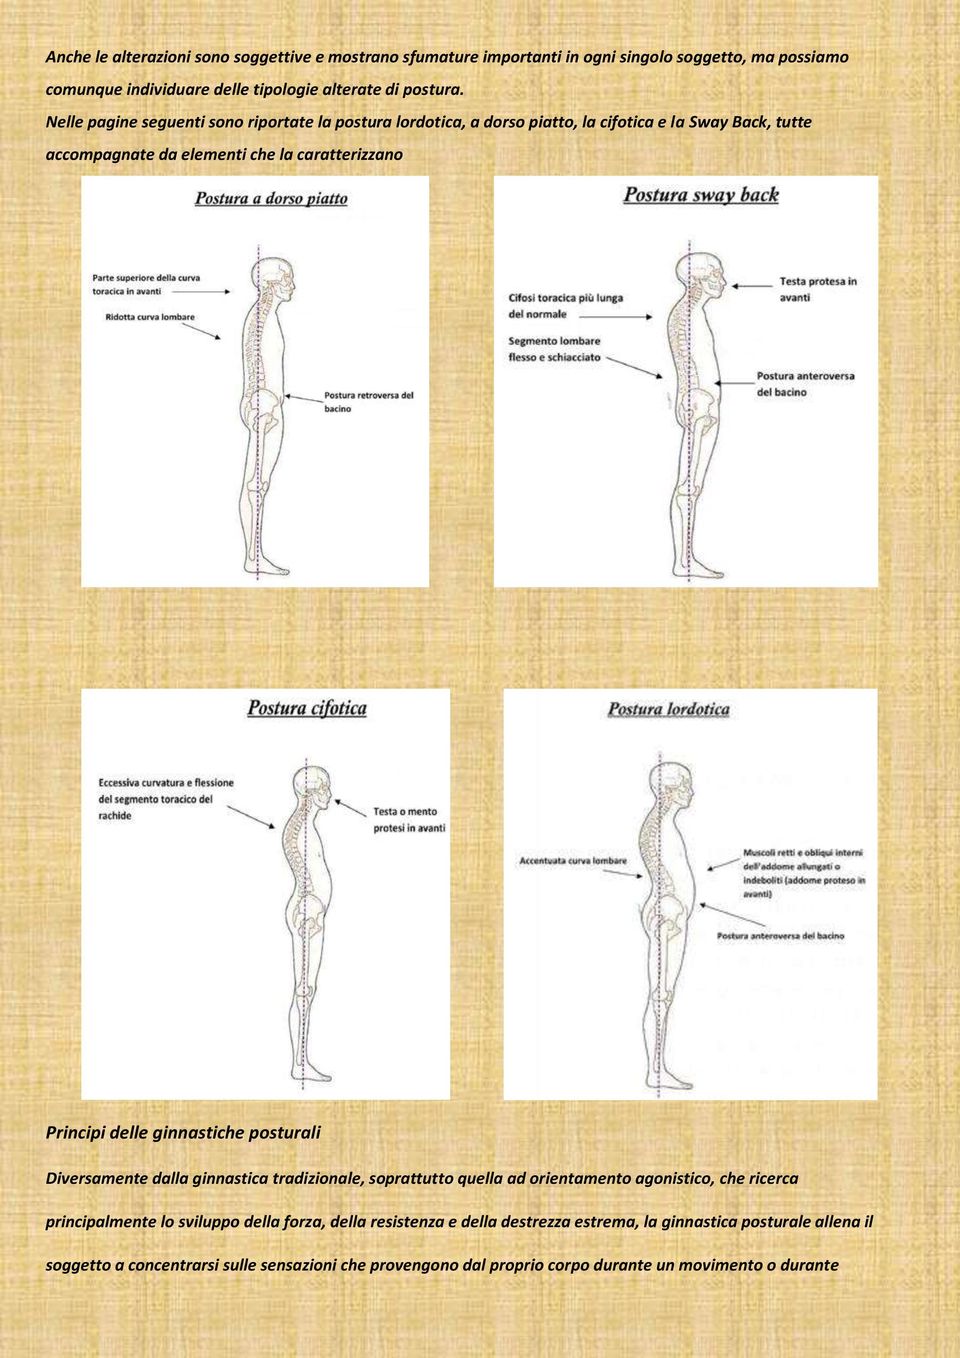 ginnastiche posturali Diversamente dalla ginnastica tradizionale, soprattutto quella ad orientamento agonistico, che ricerca principalmente lo sviluppo della forza, della